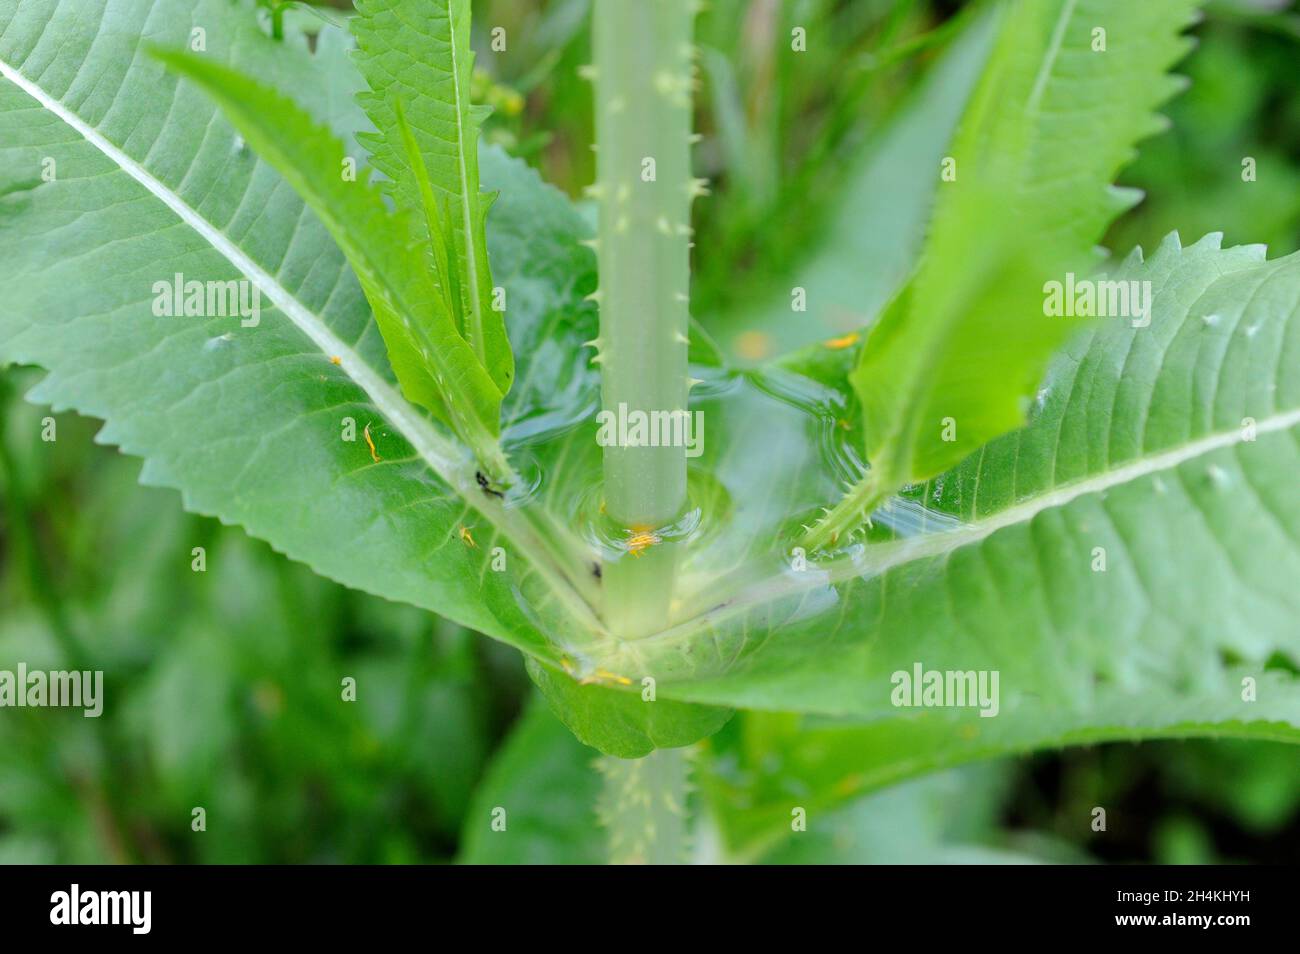 La cucharadita silvestre o cucharadita de más lleno (Dipsacus fullonum) es una planta espinosa bienal nativa de Europa y el norte de África. Detalle de las hojas tal vez con Foto de stock